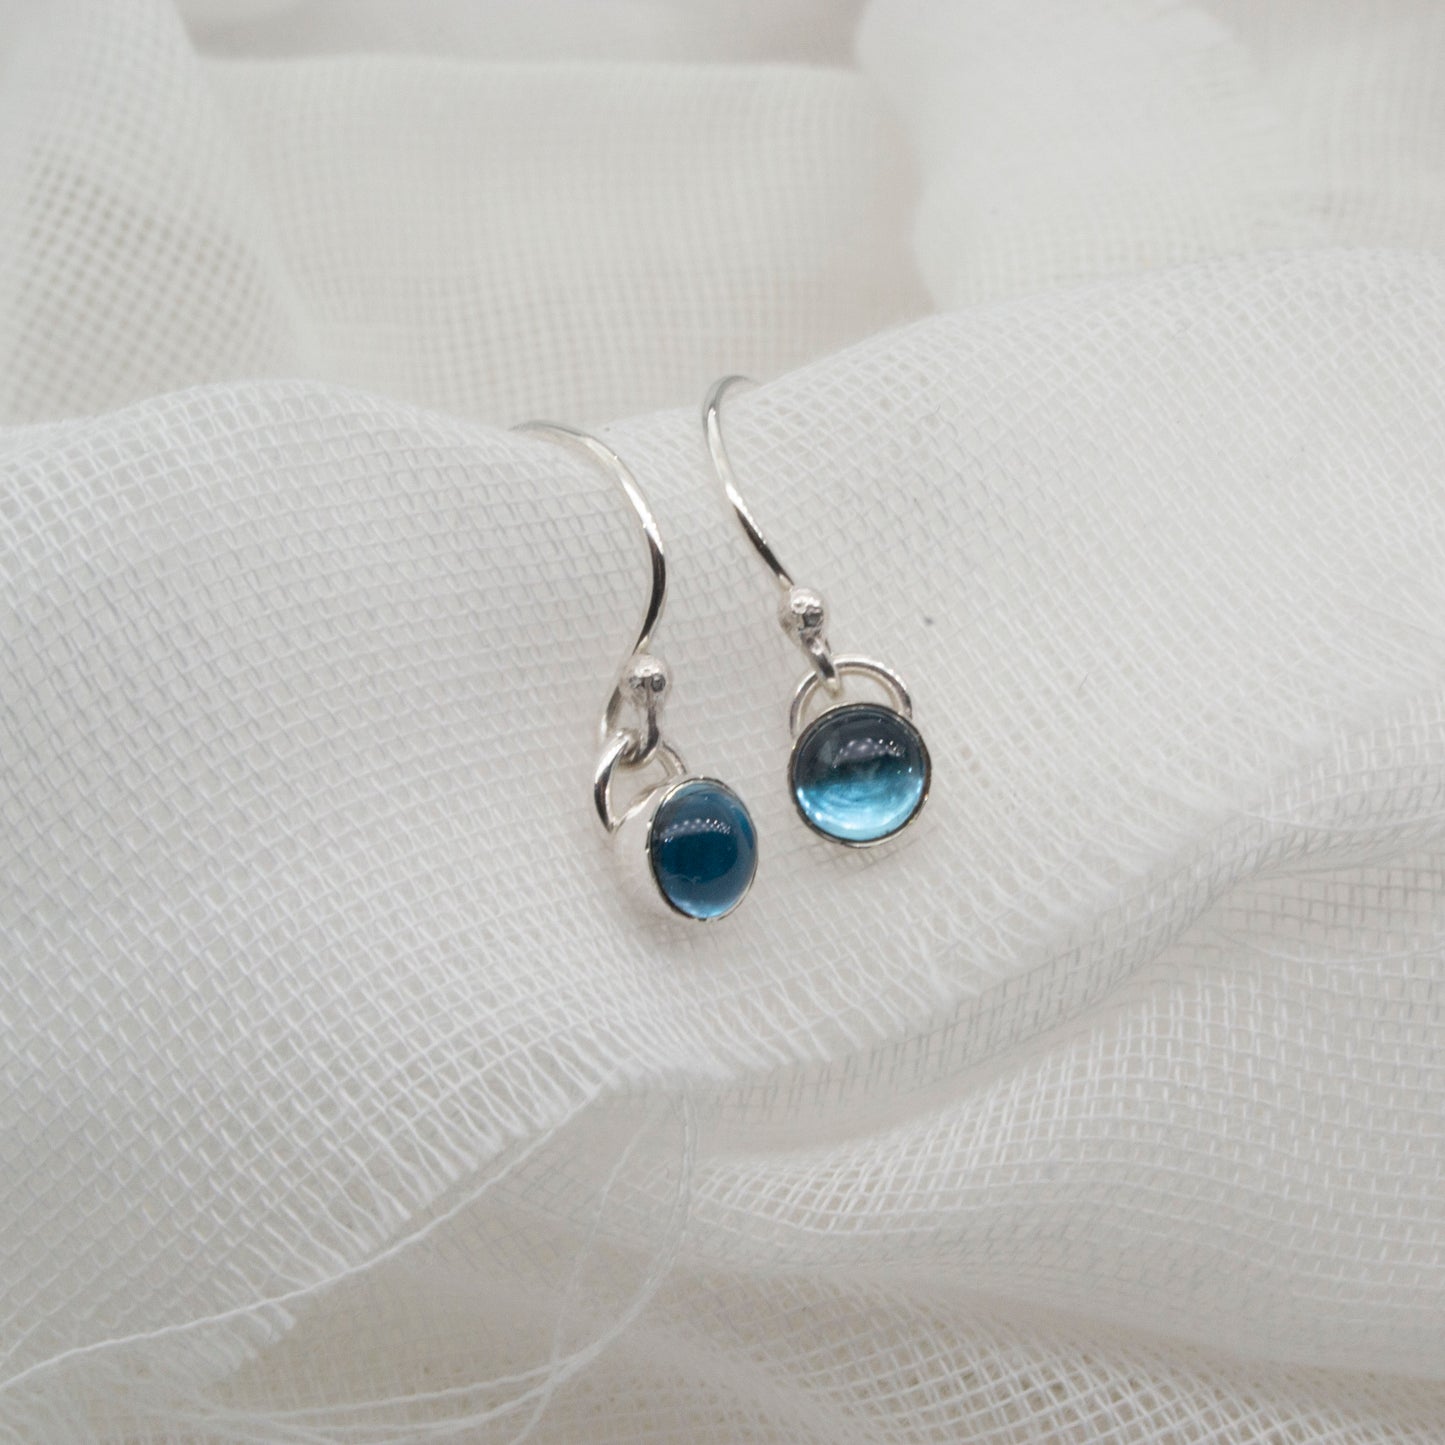 Birthstone or gemstone dangle earrings